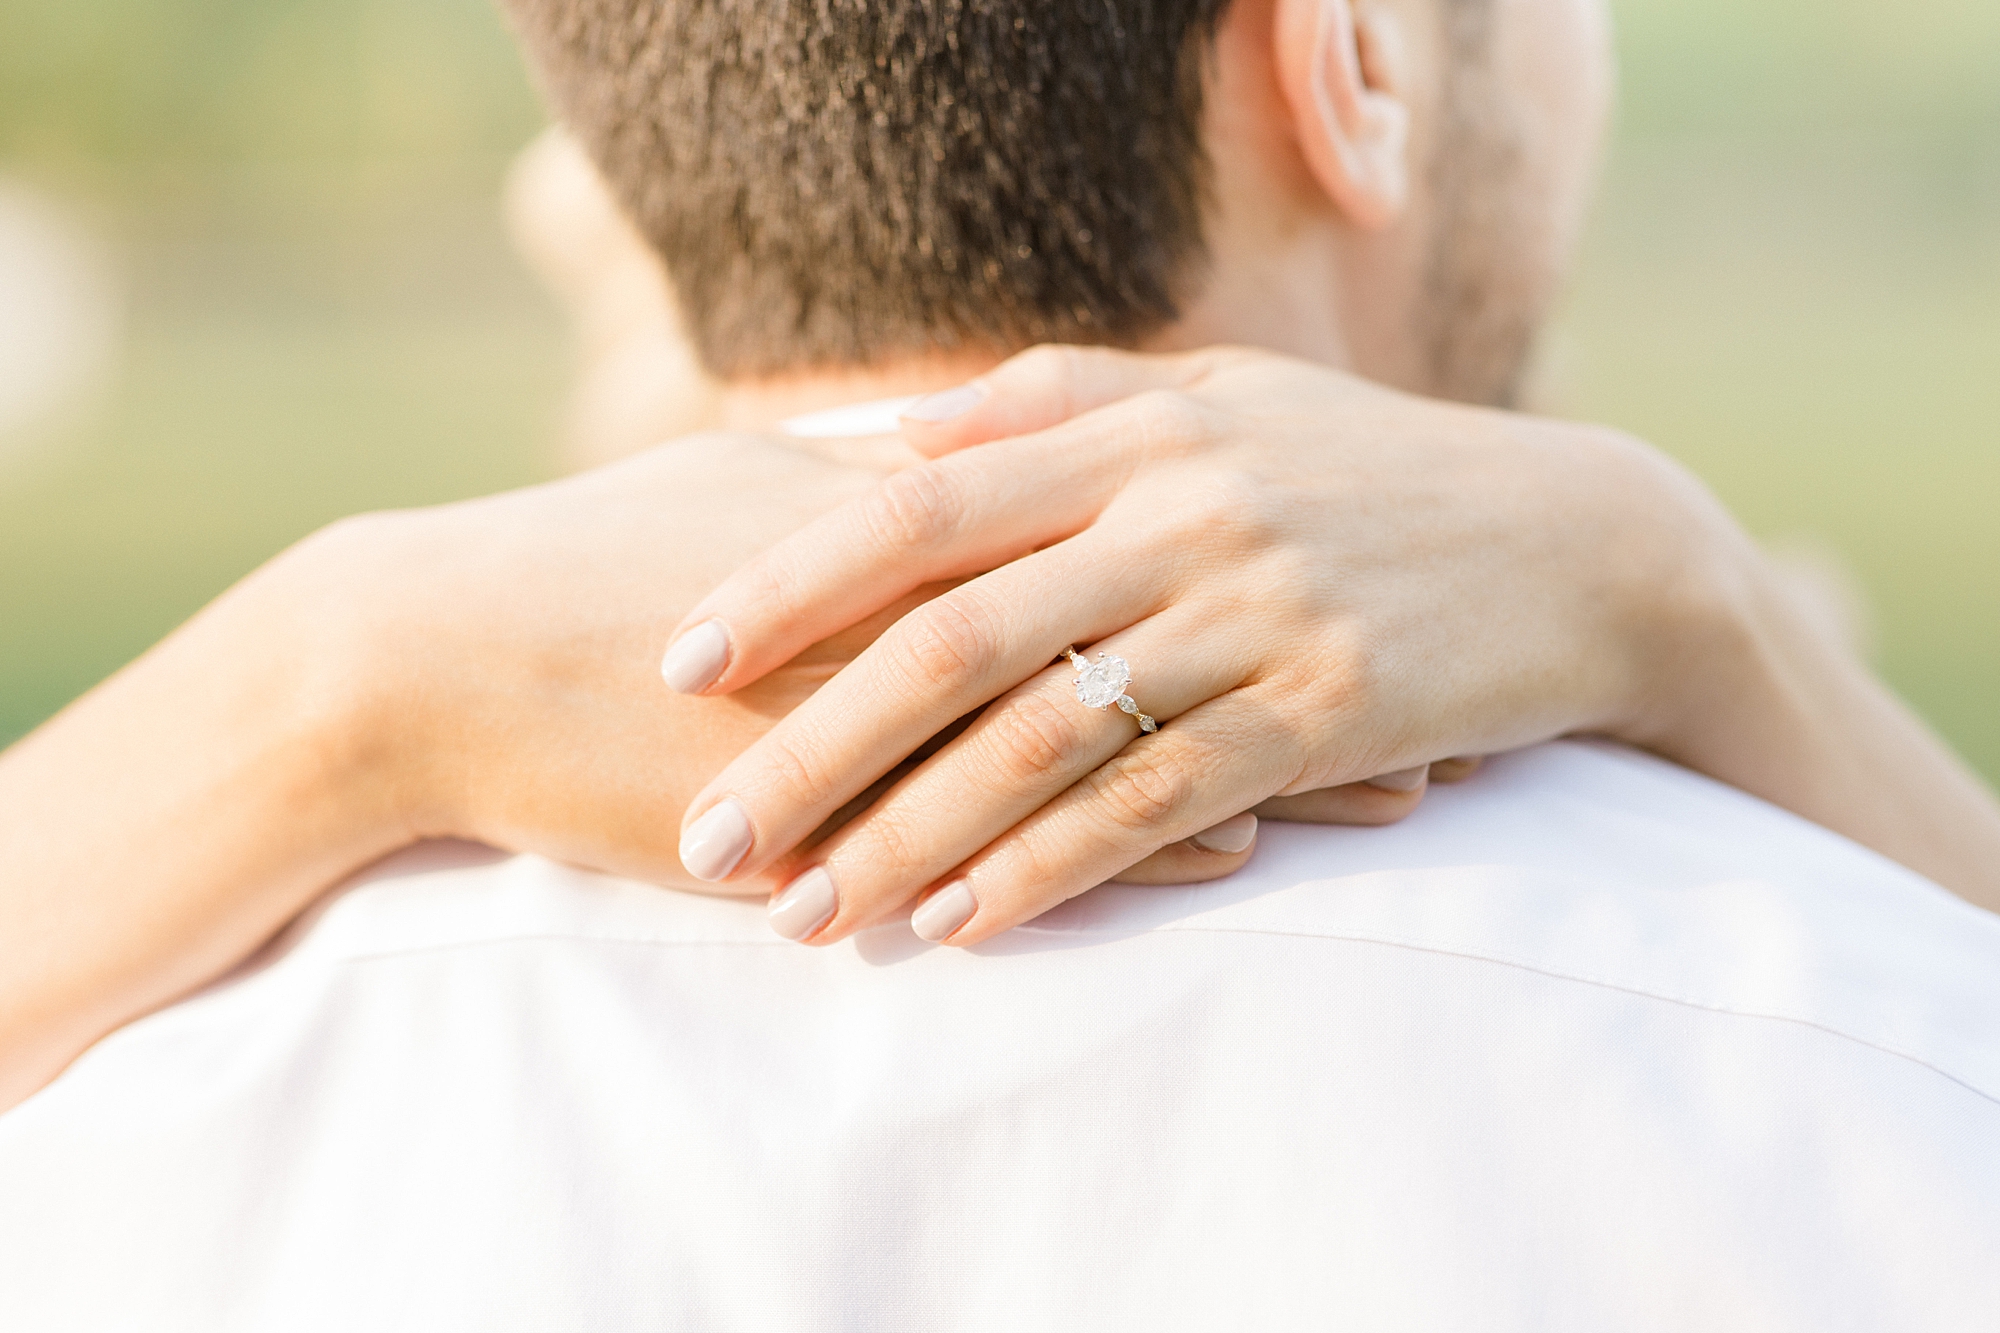 woman hugs man around neck showing engagement ring